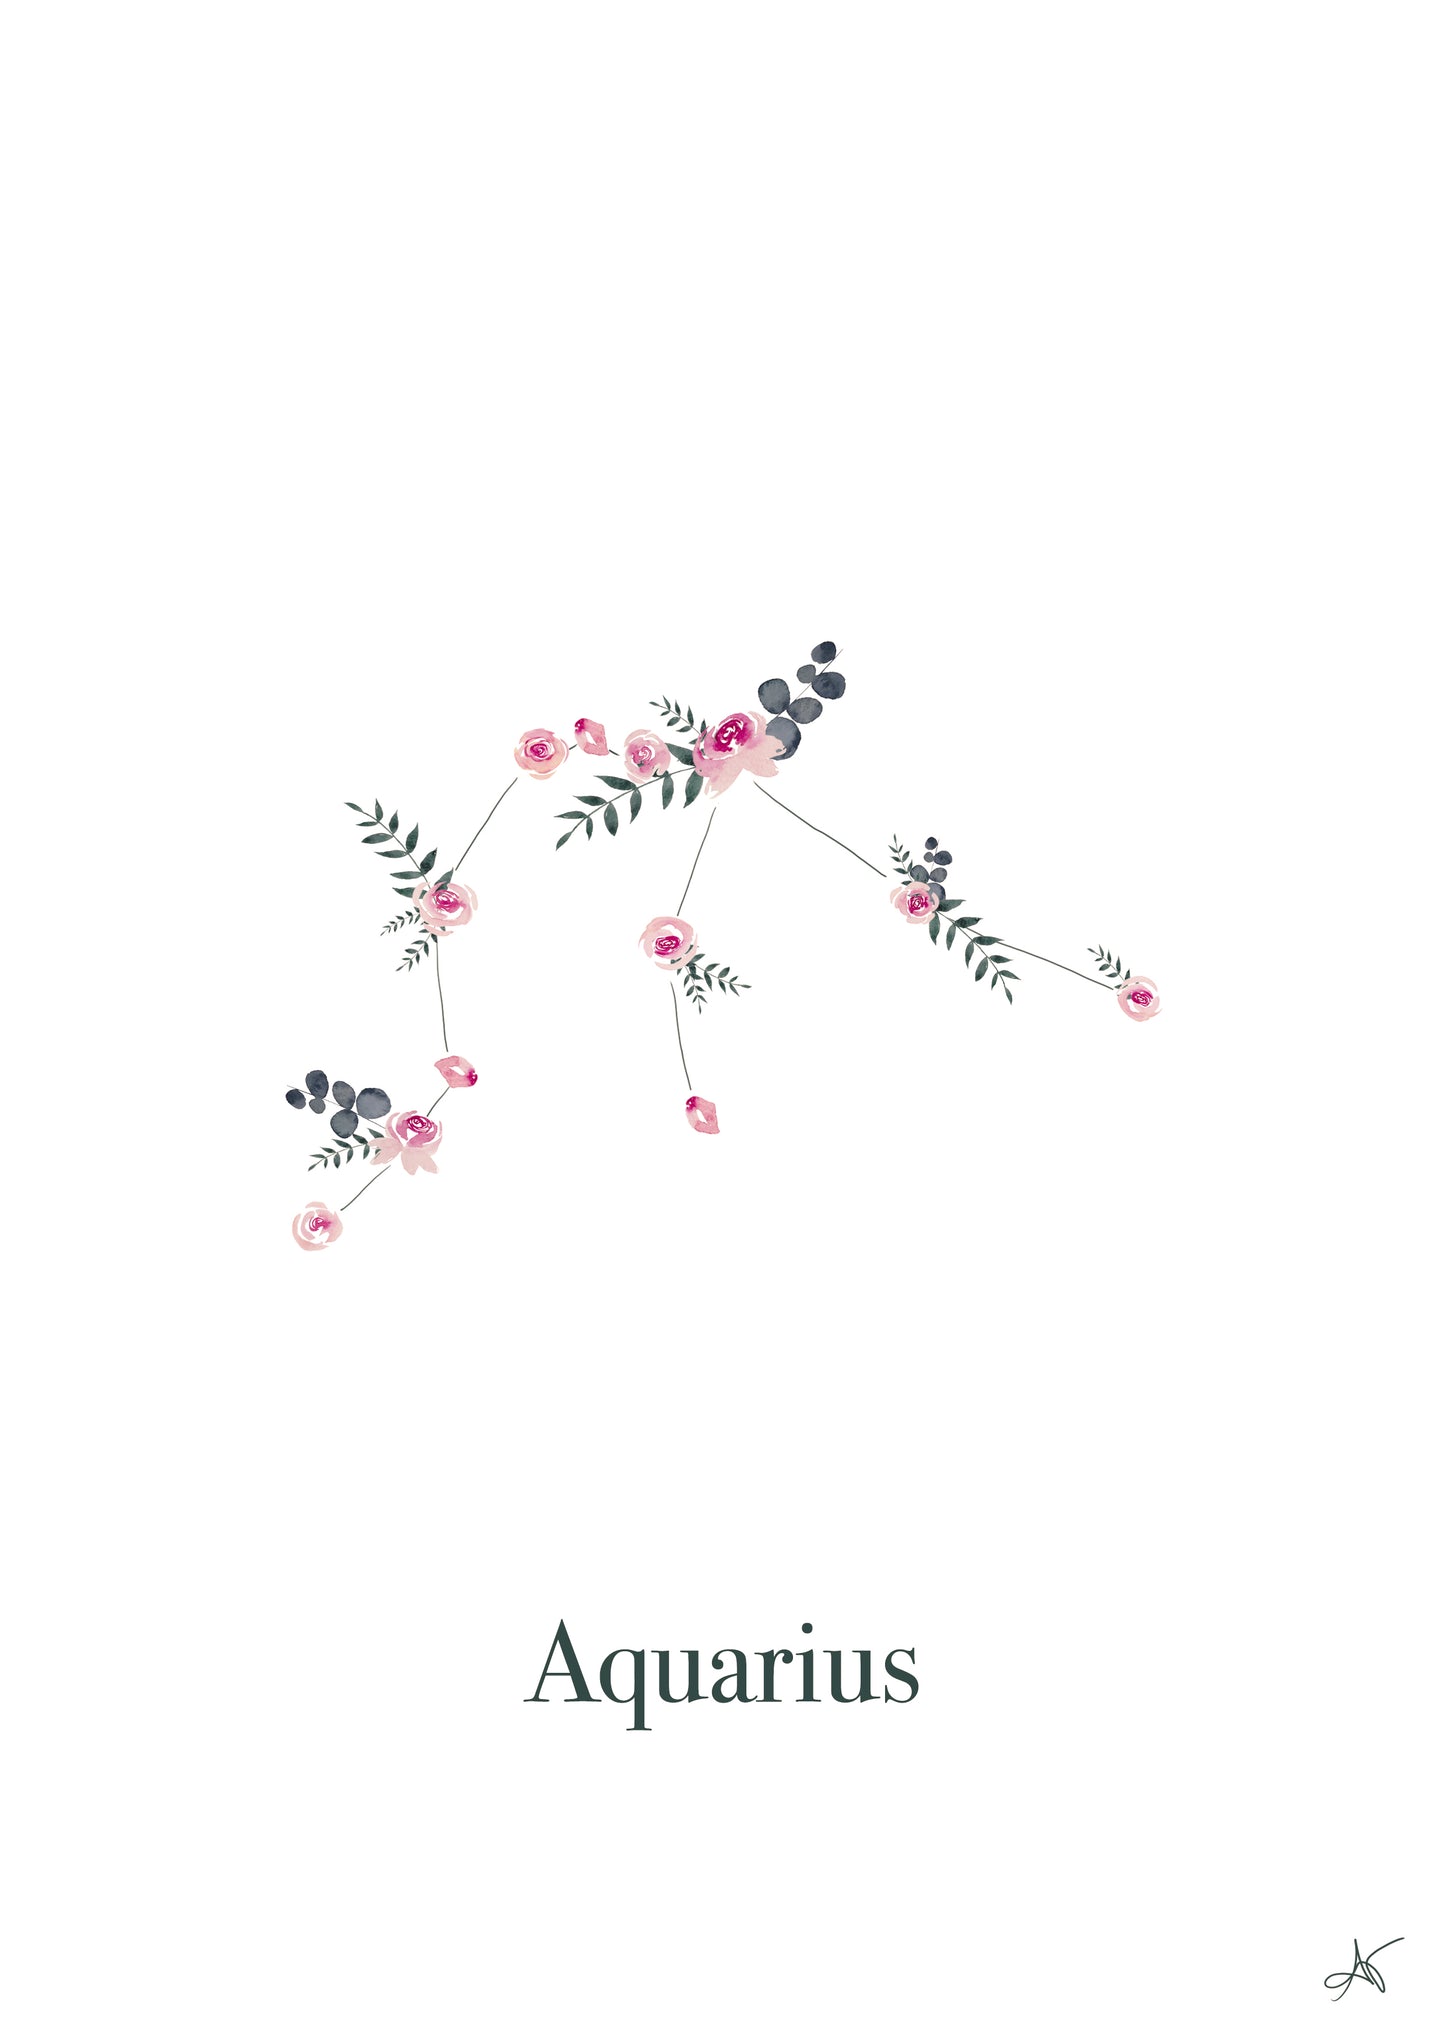 "Aquarius" - Roses